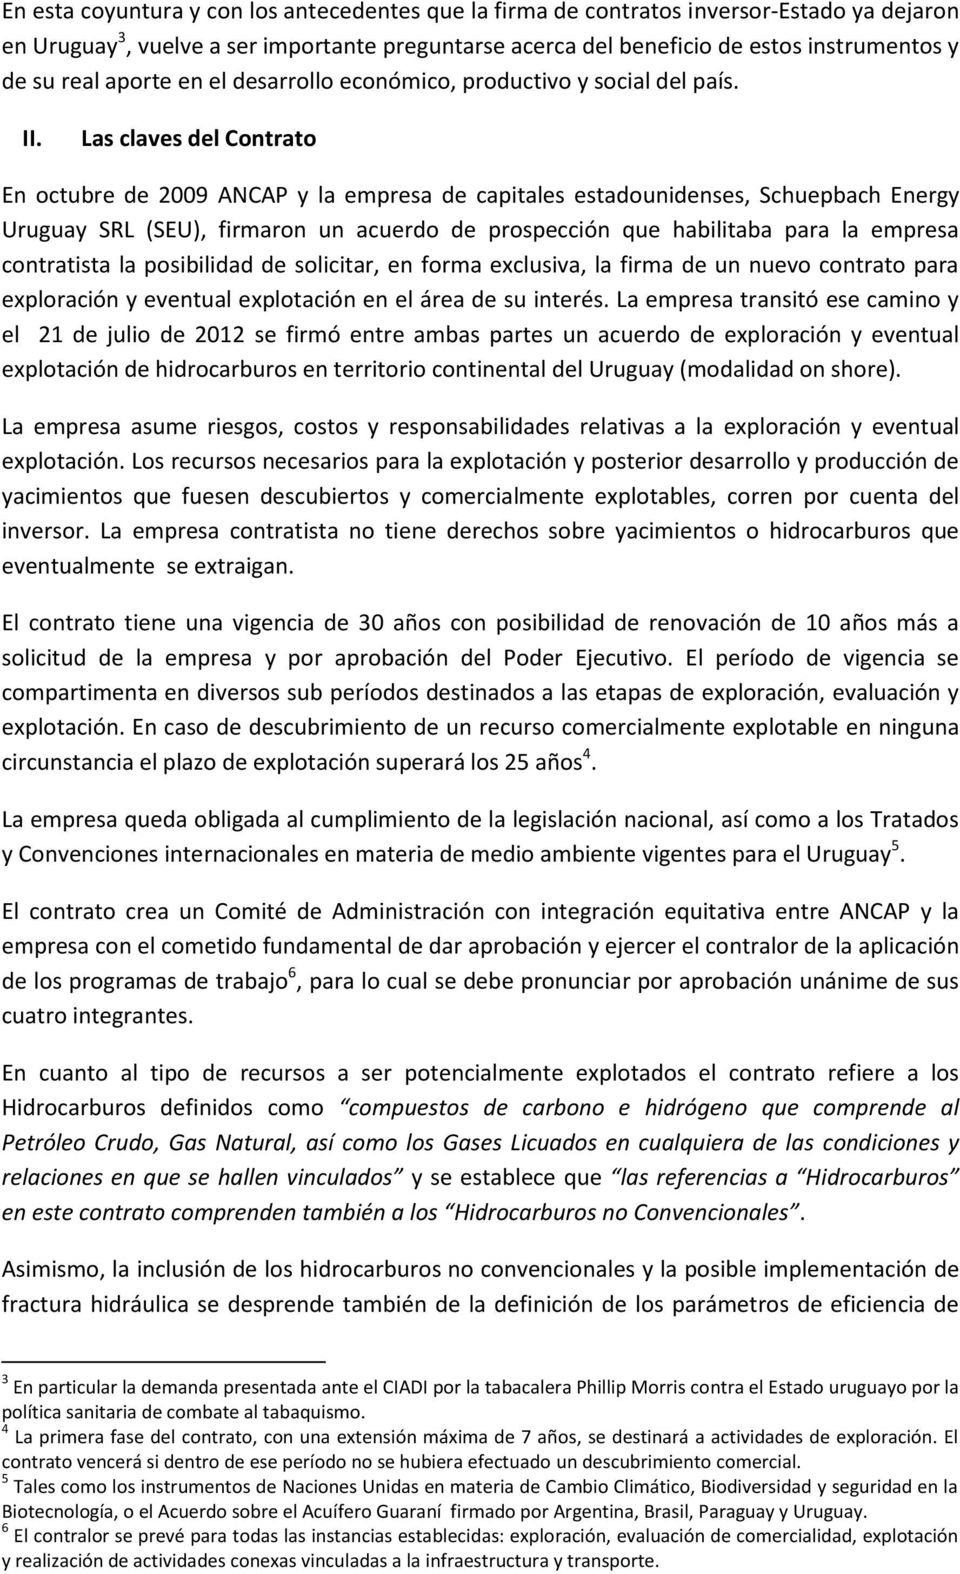 Las claves del Contrato En octubre de 2009 ANCAP y la empresa de capitales estadounidenses, Schuepbach Energy Uruguay SRL (SEU), firmaron un acuerdo de prospección que habilitaba para la empresa